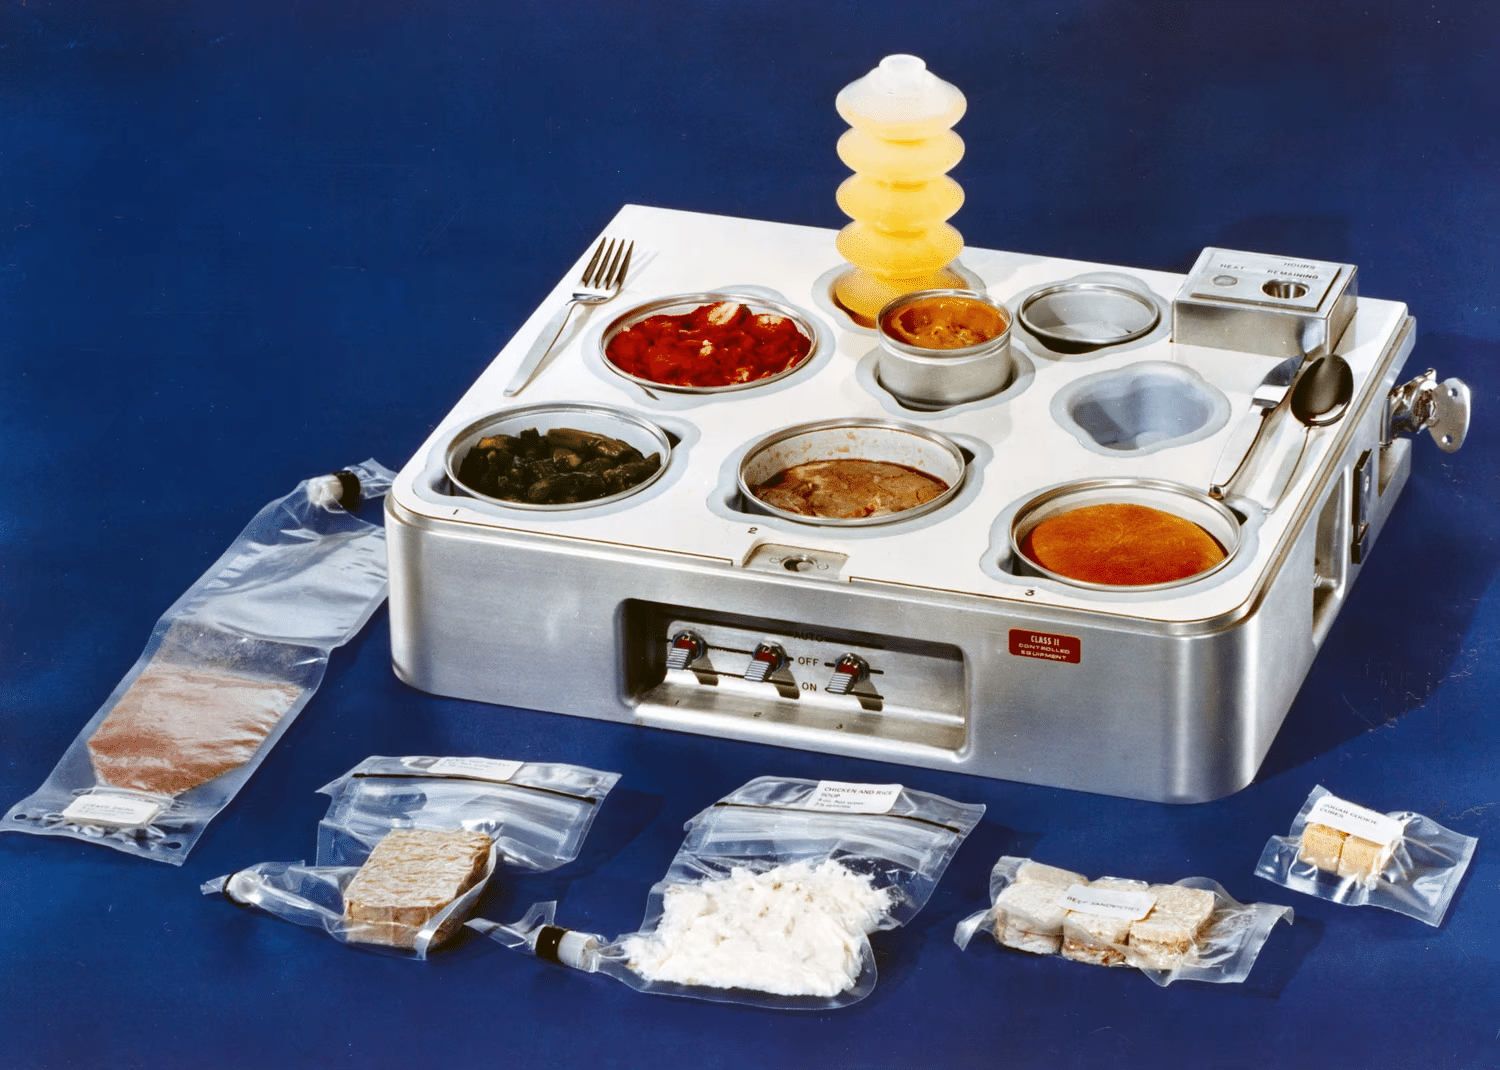 Поднос для подогрева пищи и сервировки, созданный для «Скайлэб» / ©NASA